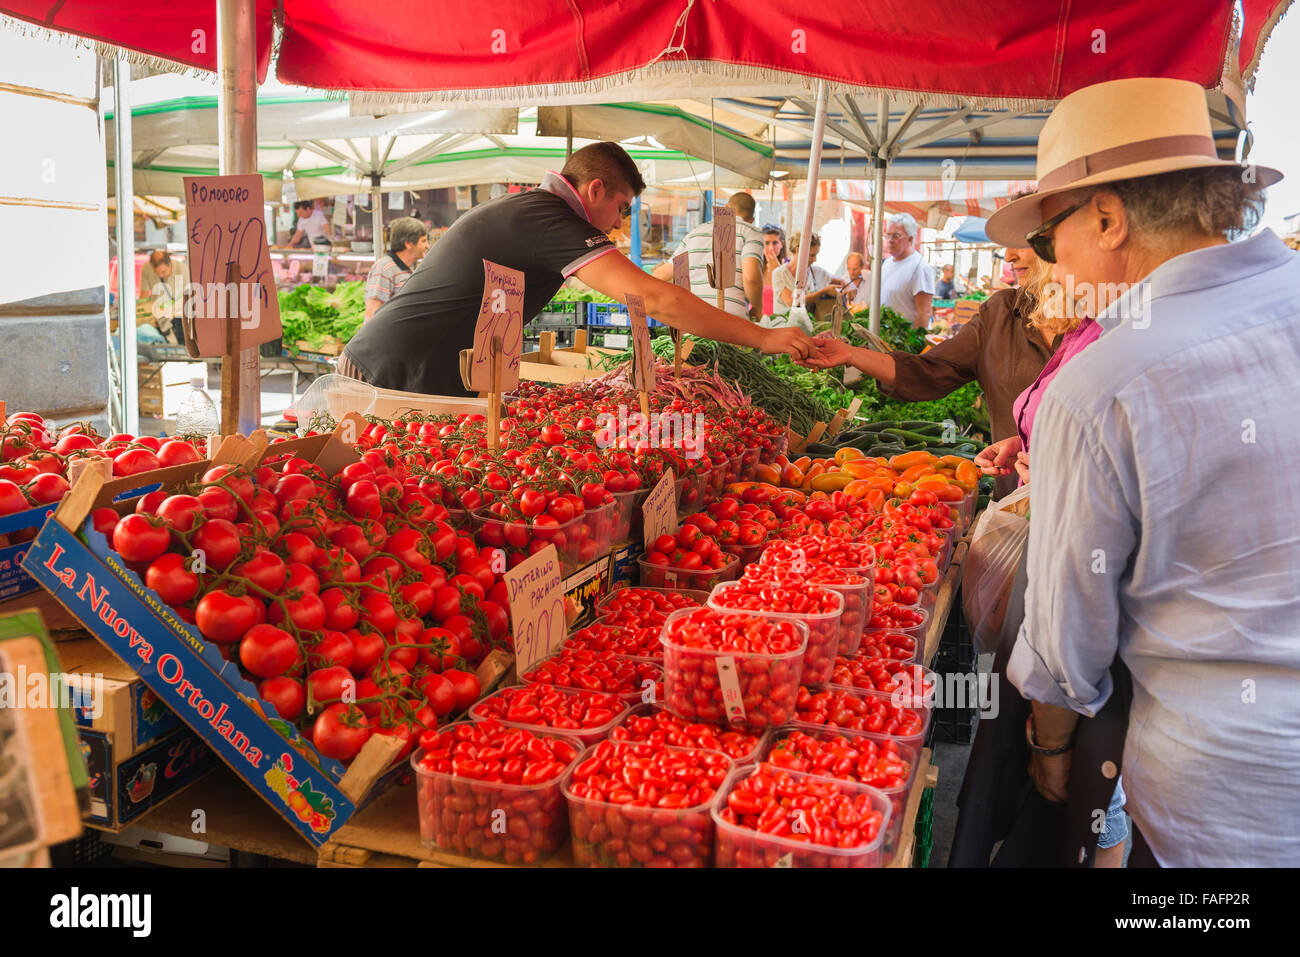 Cibo Sicilia persone, vista della gente che acquista pomodori freschi nel mercato dell'isola di Ortigia, Siracusa (Siracusa), Sicilia. Foto Stock